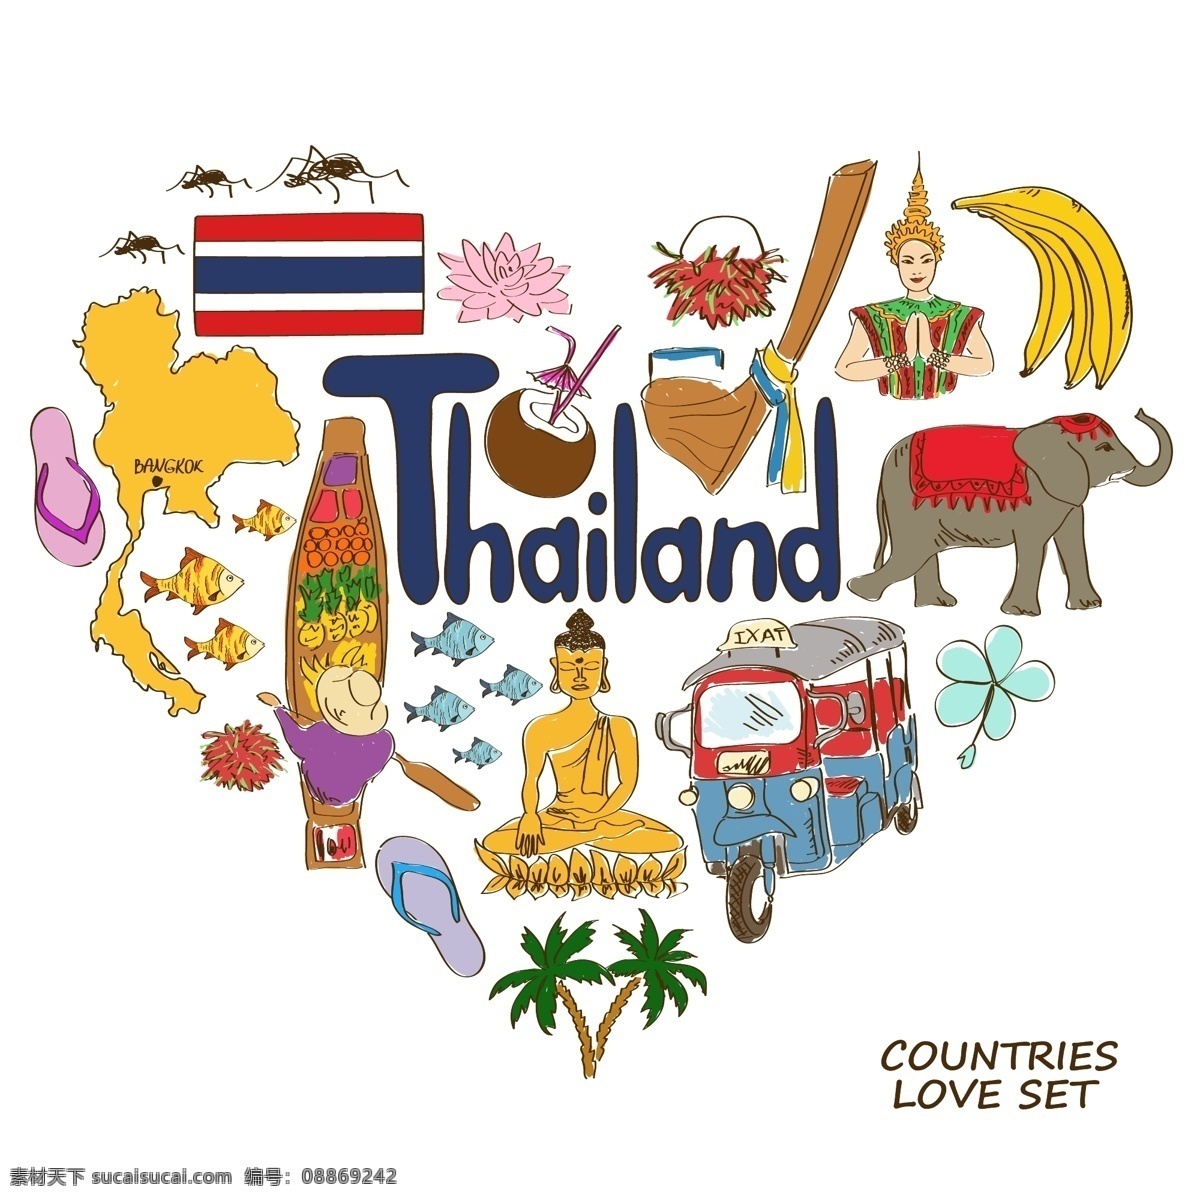 泰国 旅行 创意 元素 插画 建筑 地图 人物 特色 动物